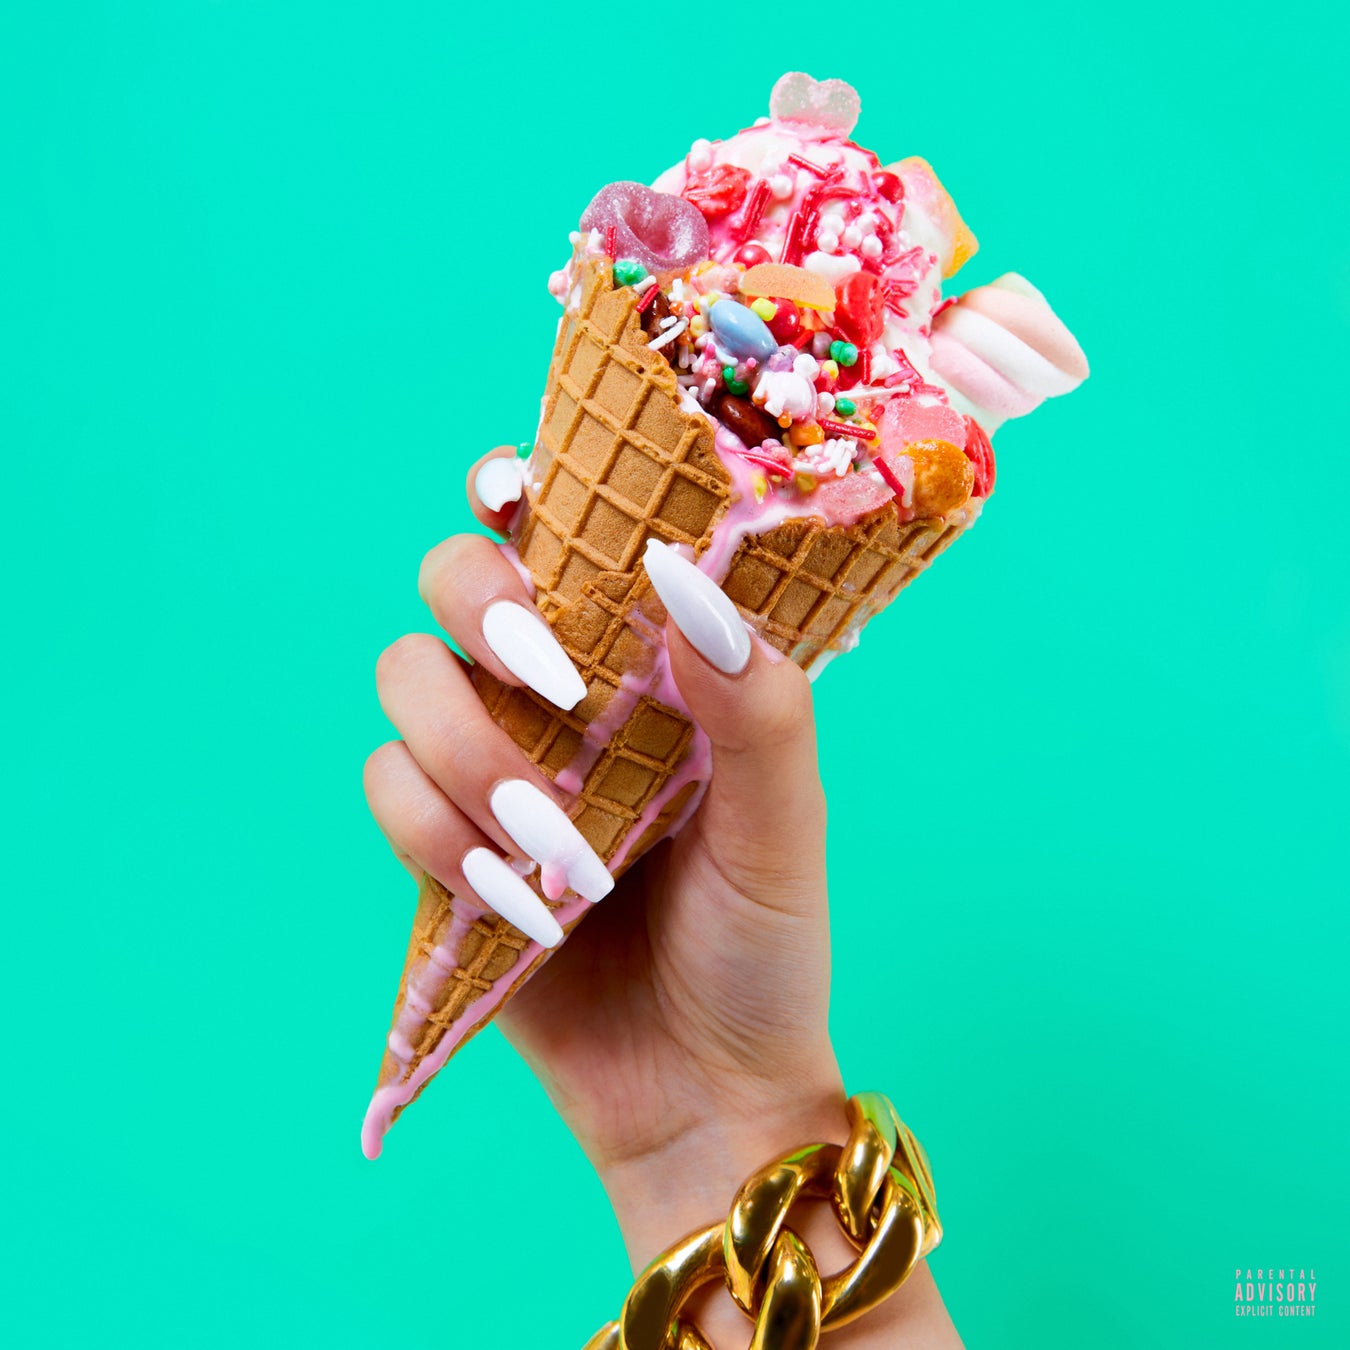 KAHOH、4年ぶりとなるEP「Ice Cream e.p.」リリース！新曲に大注目のプロデューサーユニットBankroll Got itが参加！